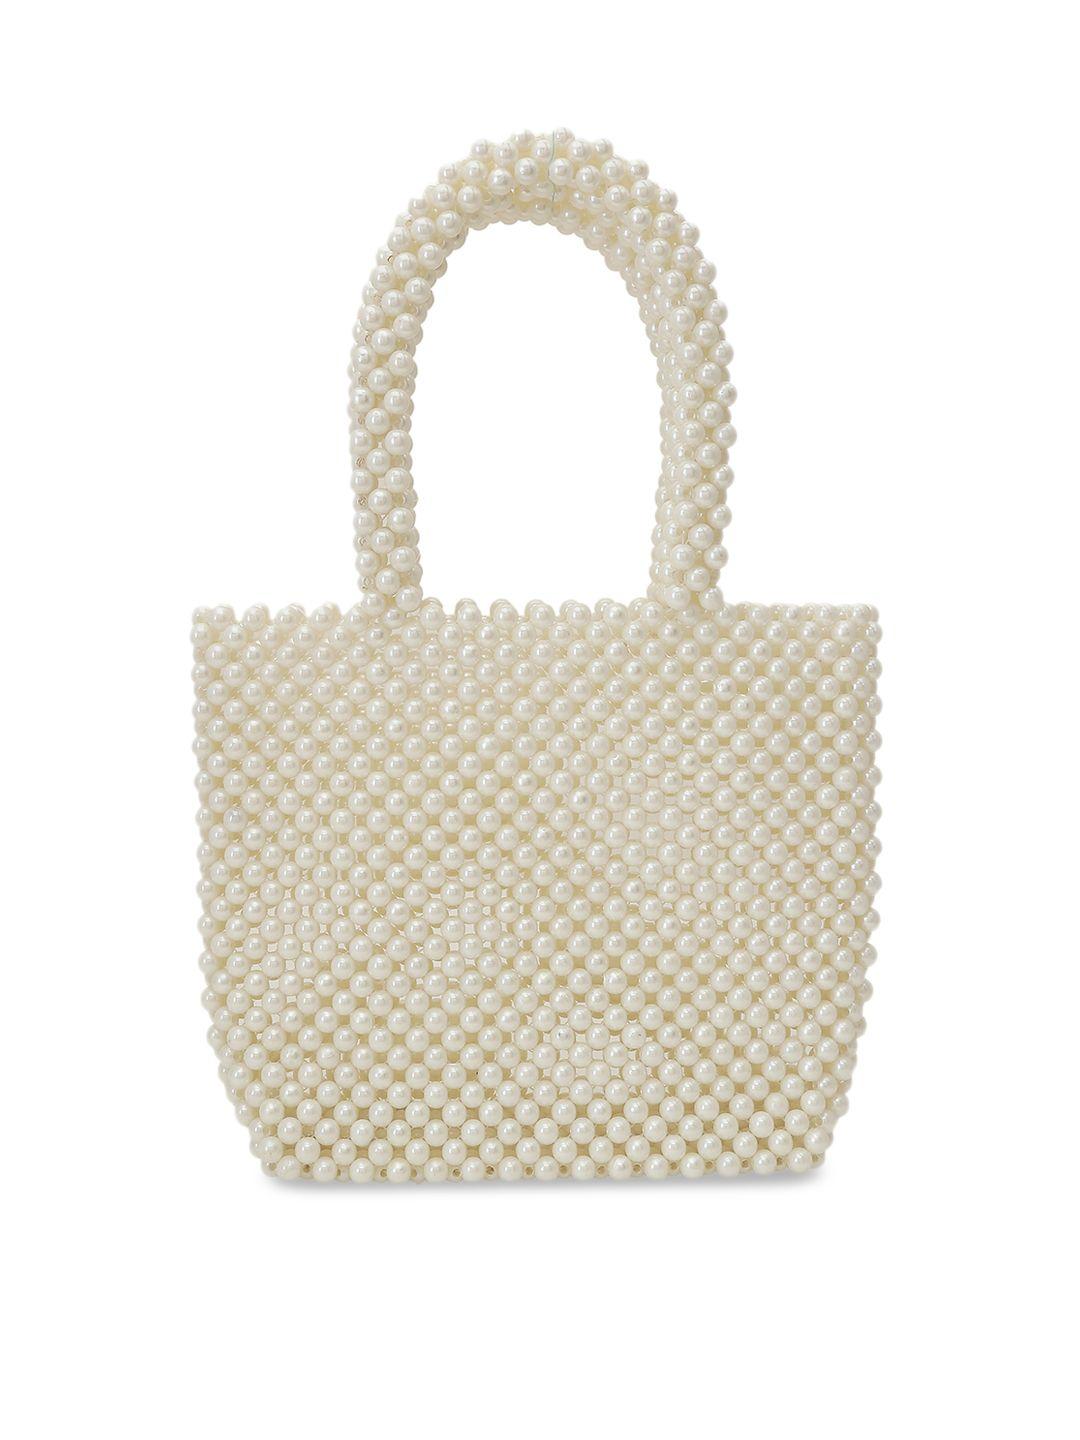 tarini nirula off-white pearl embellished tote bag